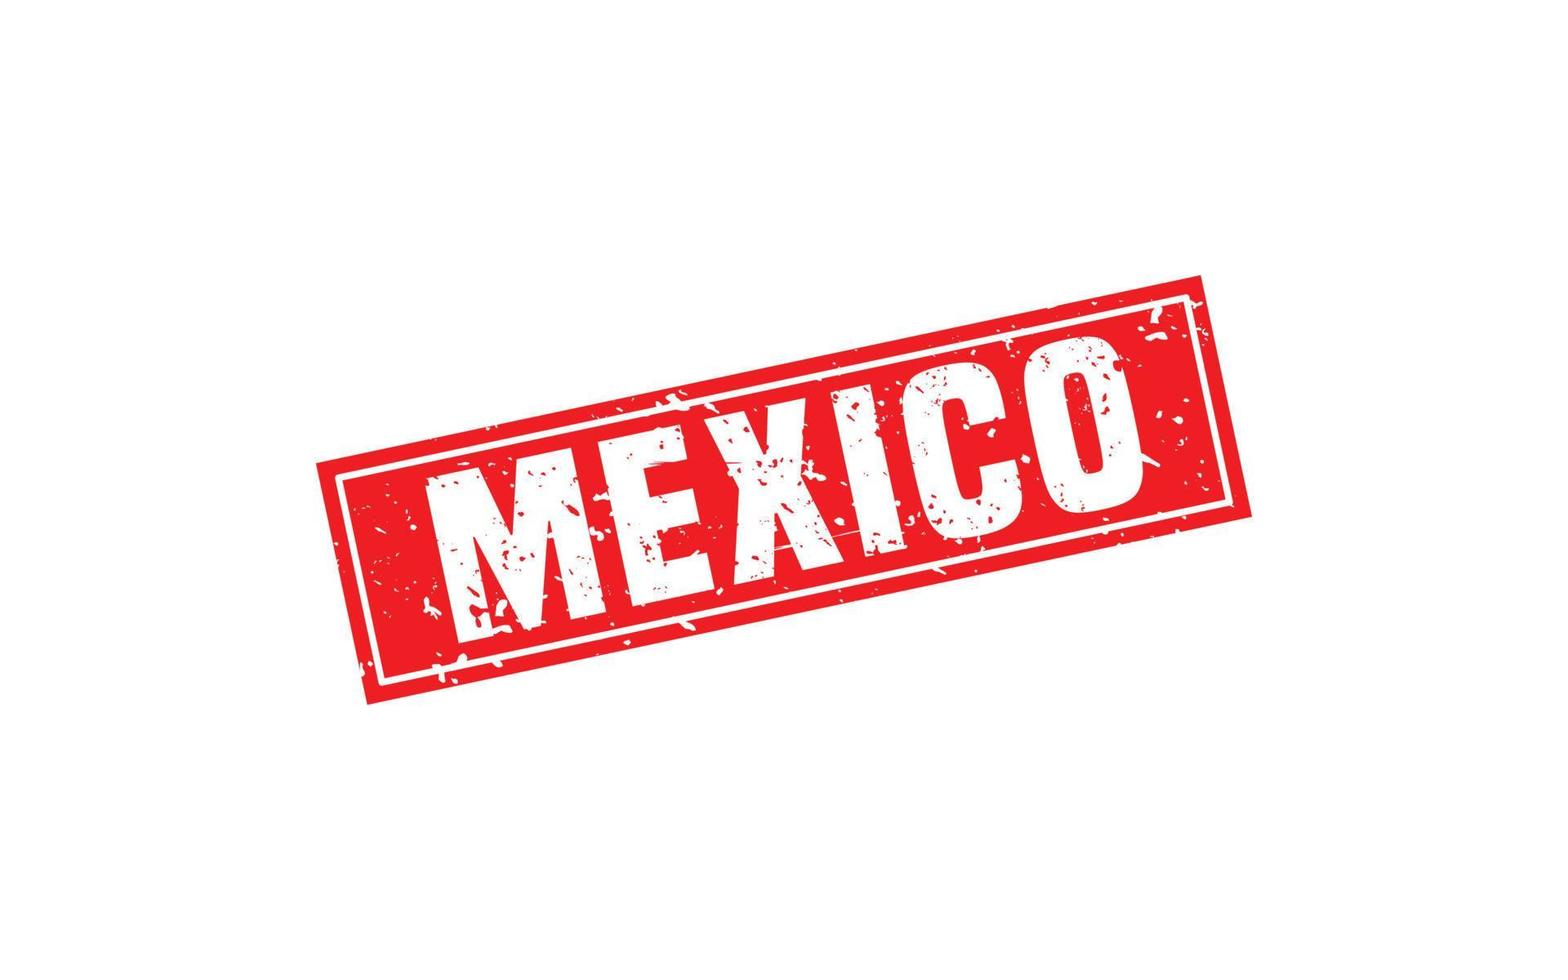 Mexiko-Stempelgummi mit Grunge-Stil auf weißem Hintergrund vektor